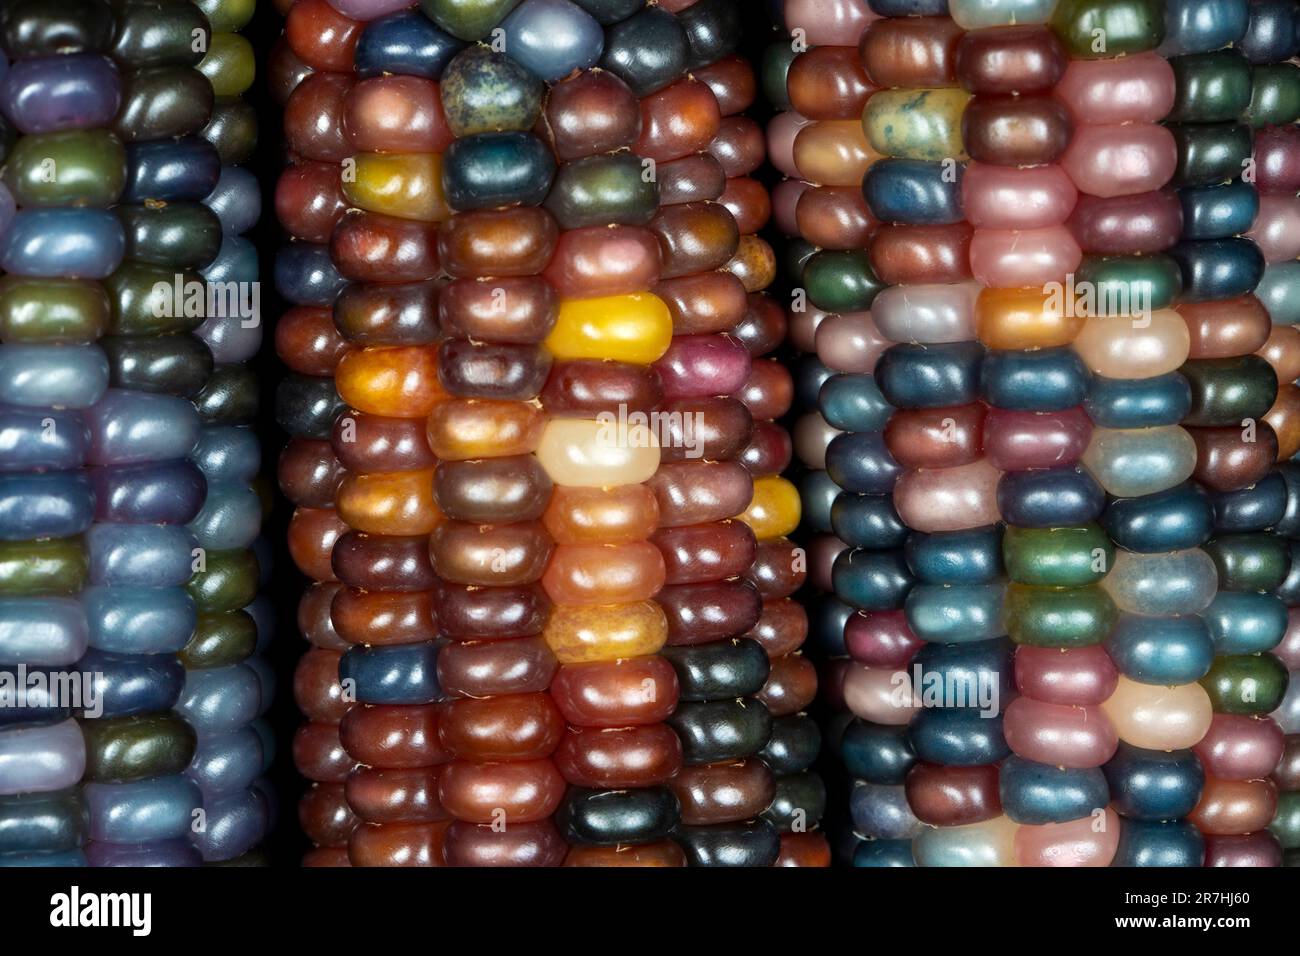 Glass Gem corn (botanicamente classificato come Zea mays). Questa varietà produce gorgeous sfere di vetro multicolore- o gemme-come le pannocchie. Foto Stock